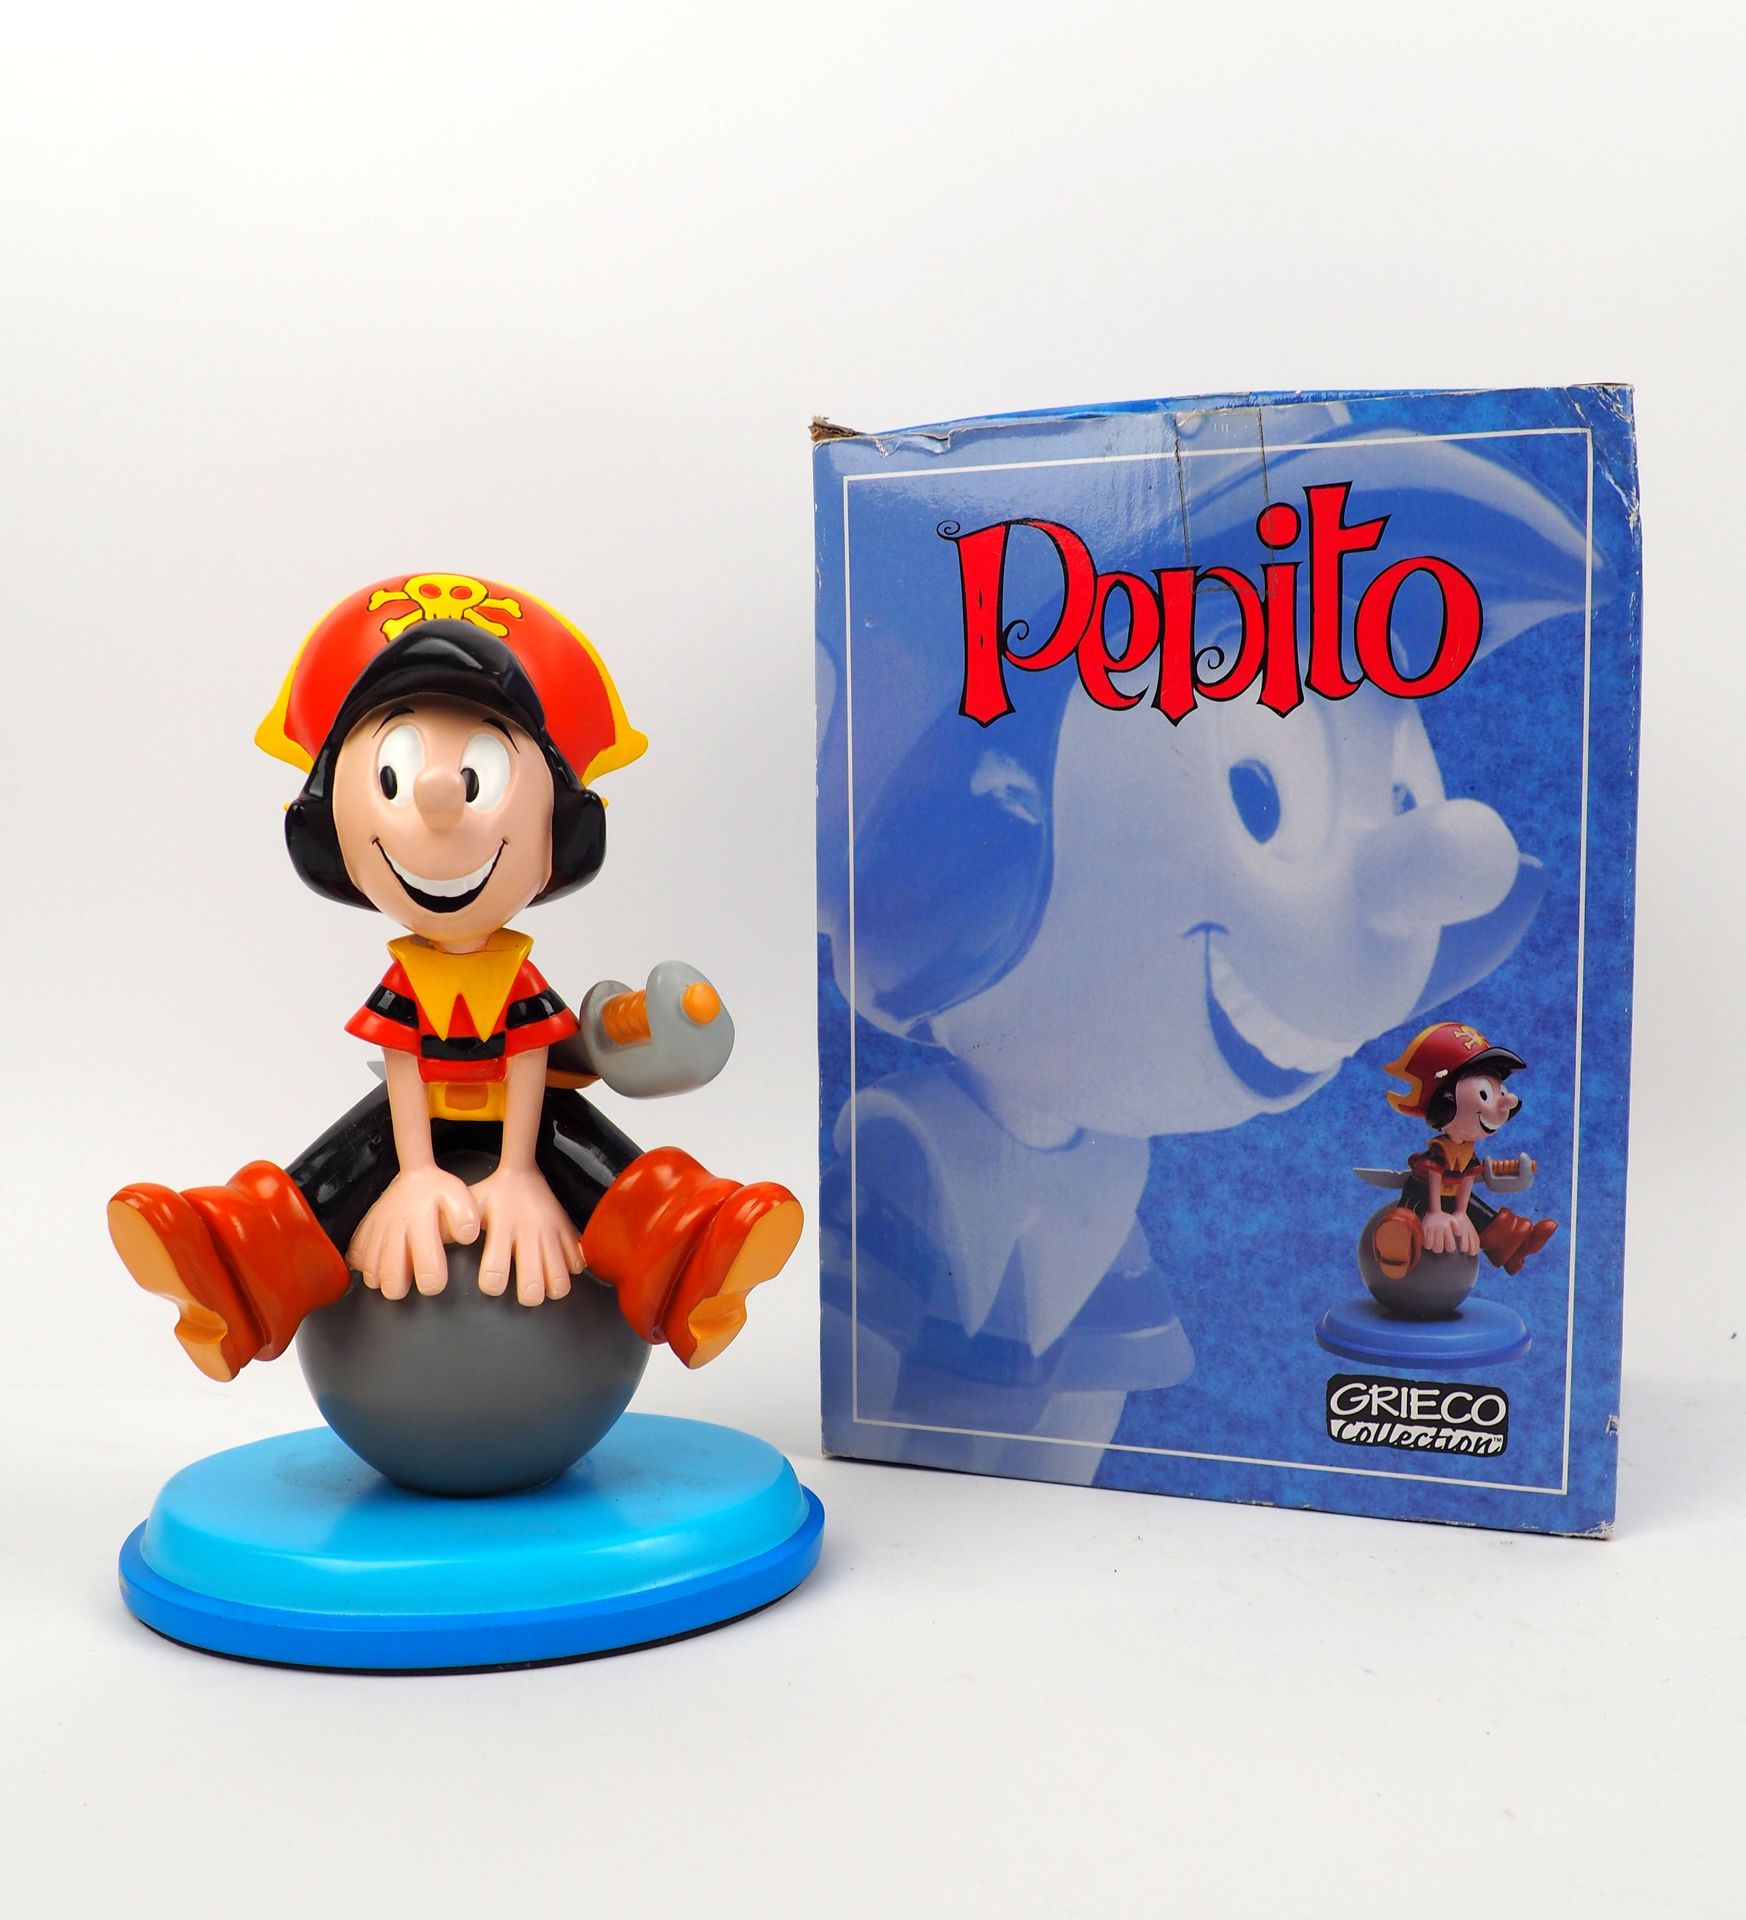 Null BOTTARO
Pepito
Figurina edita da Grieco, edizione limitata a 500 esemplari
&hellip;